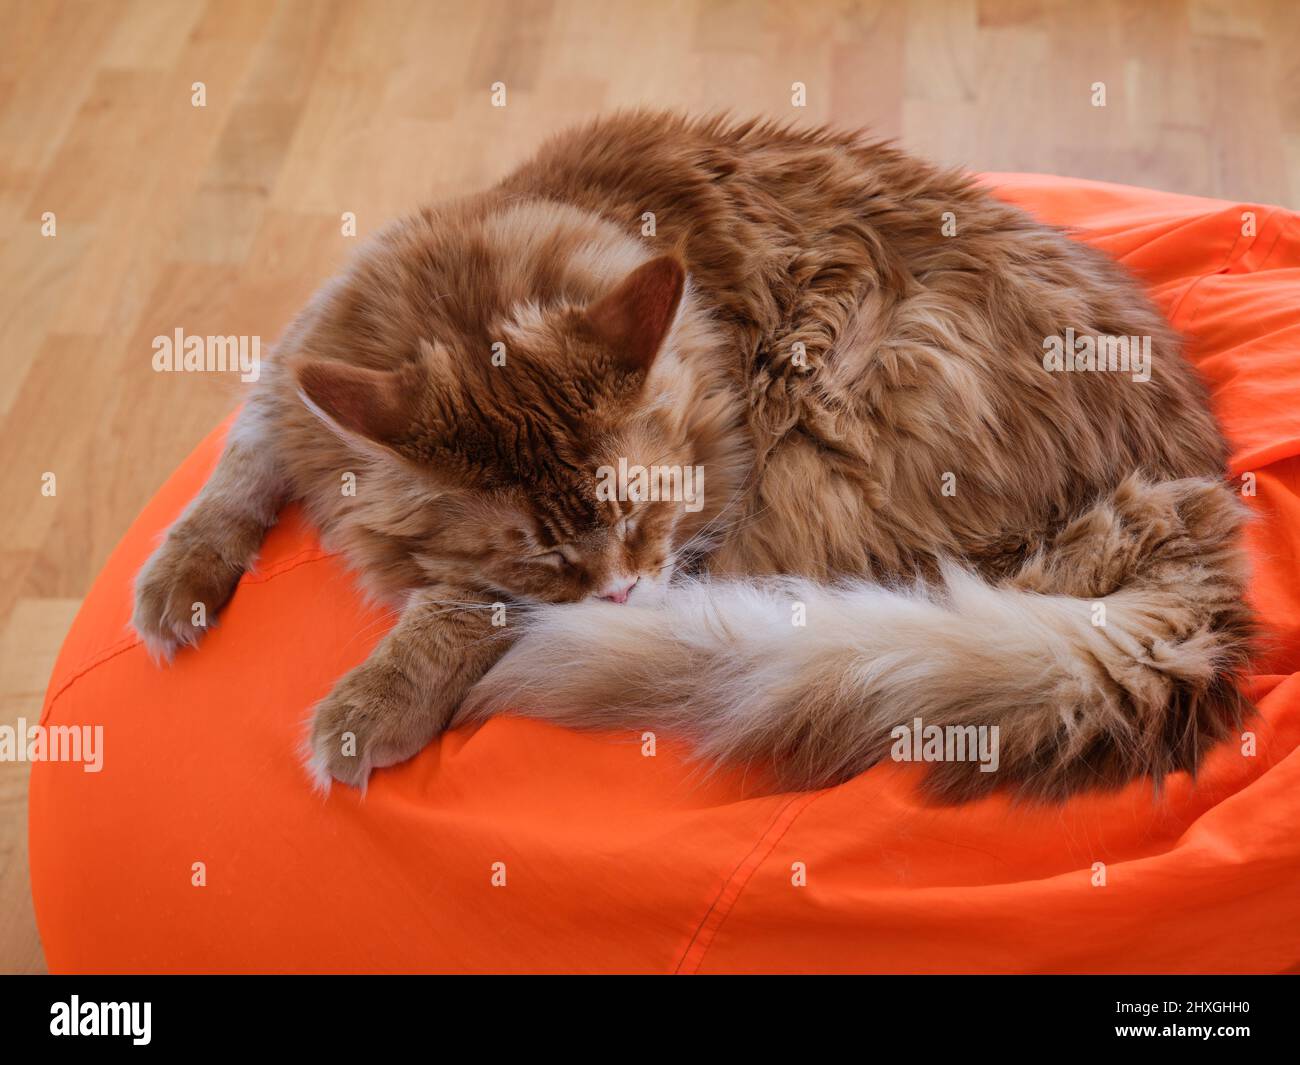 Un chat de maine coon rouge dormant sur une chaise de sac de haricot orange. Gros plan. Banque D'Images